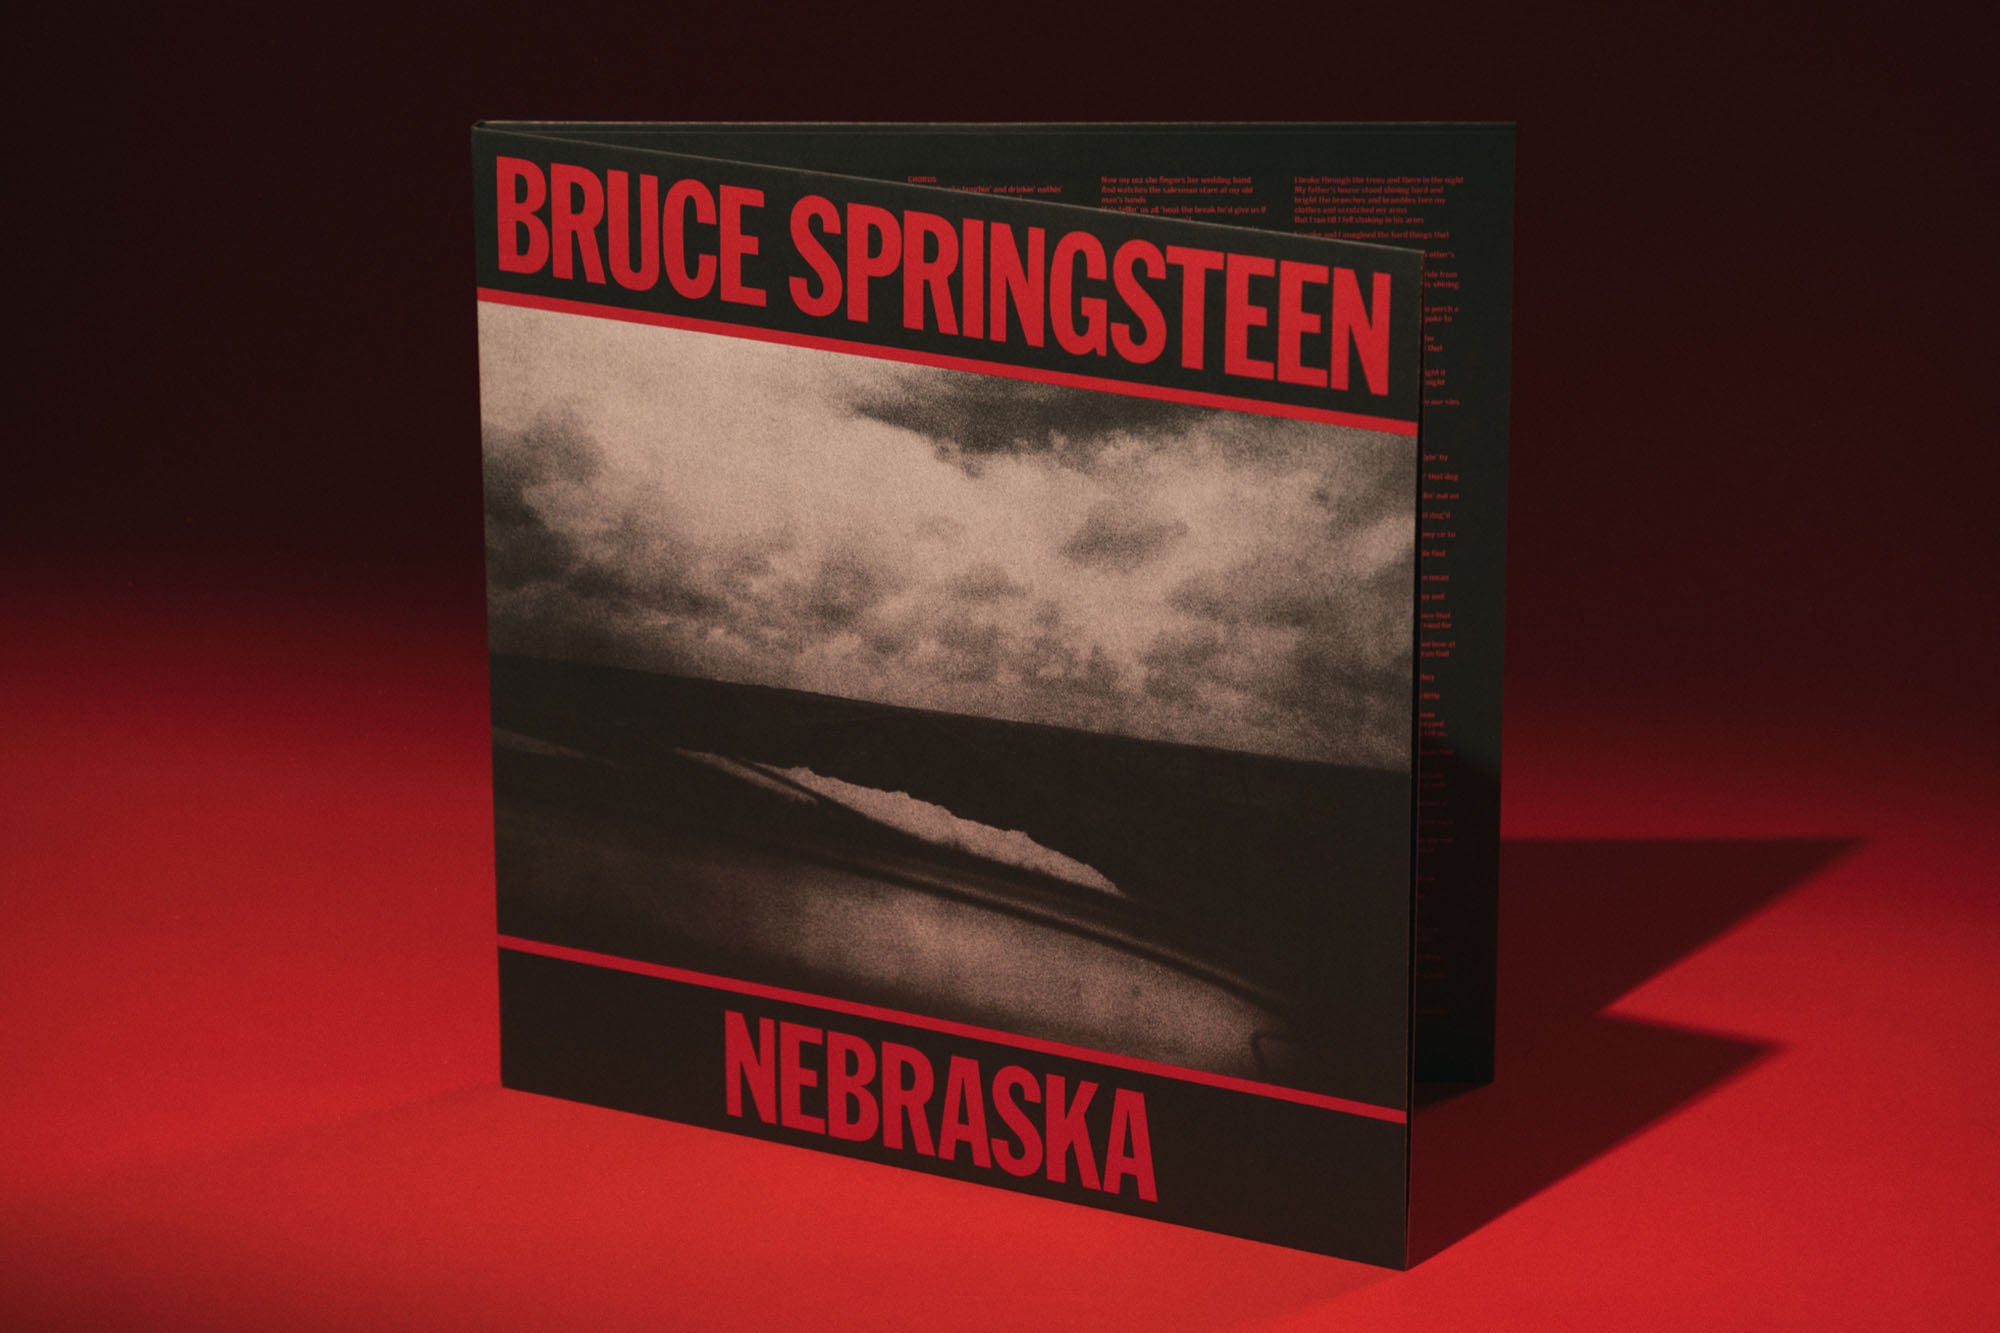 Bruce Springsteen 'Nebraska' - Vinyl Me, Please